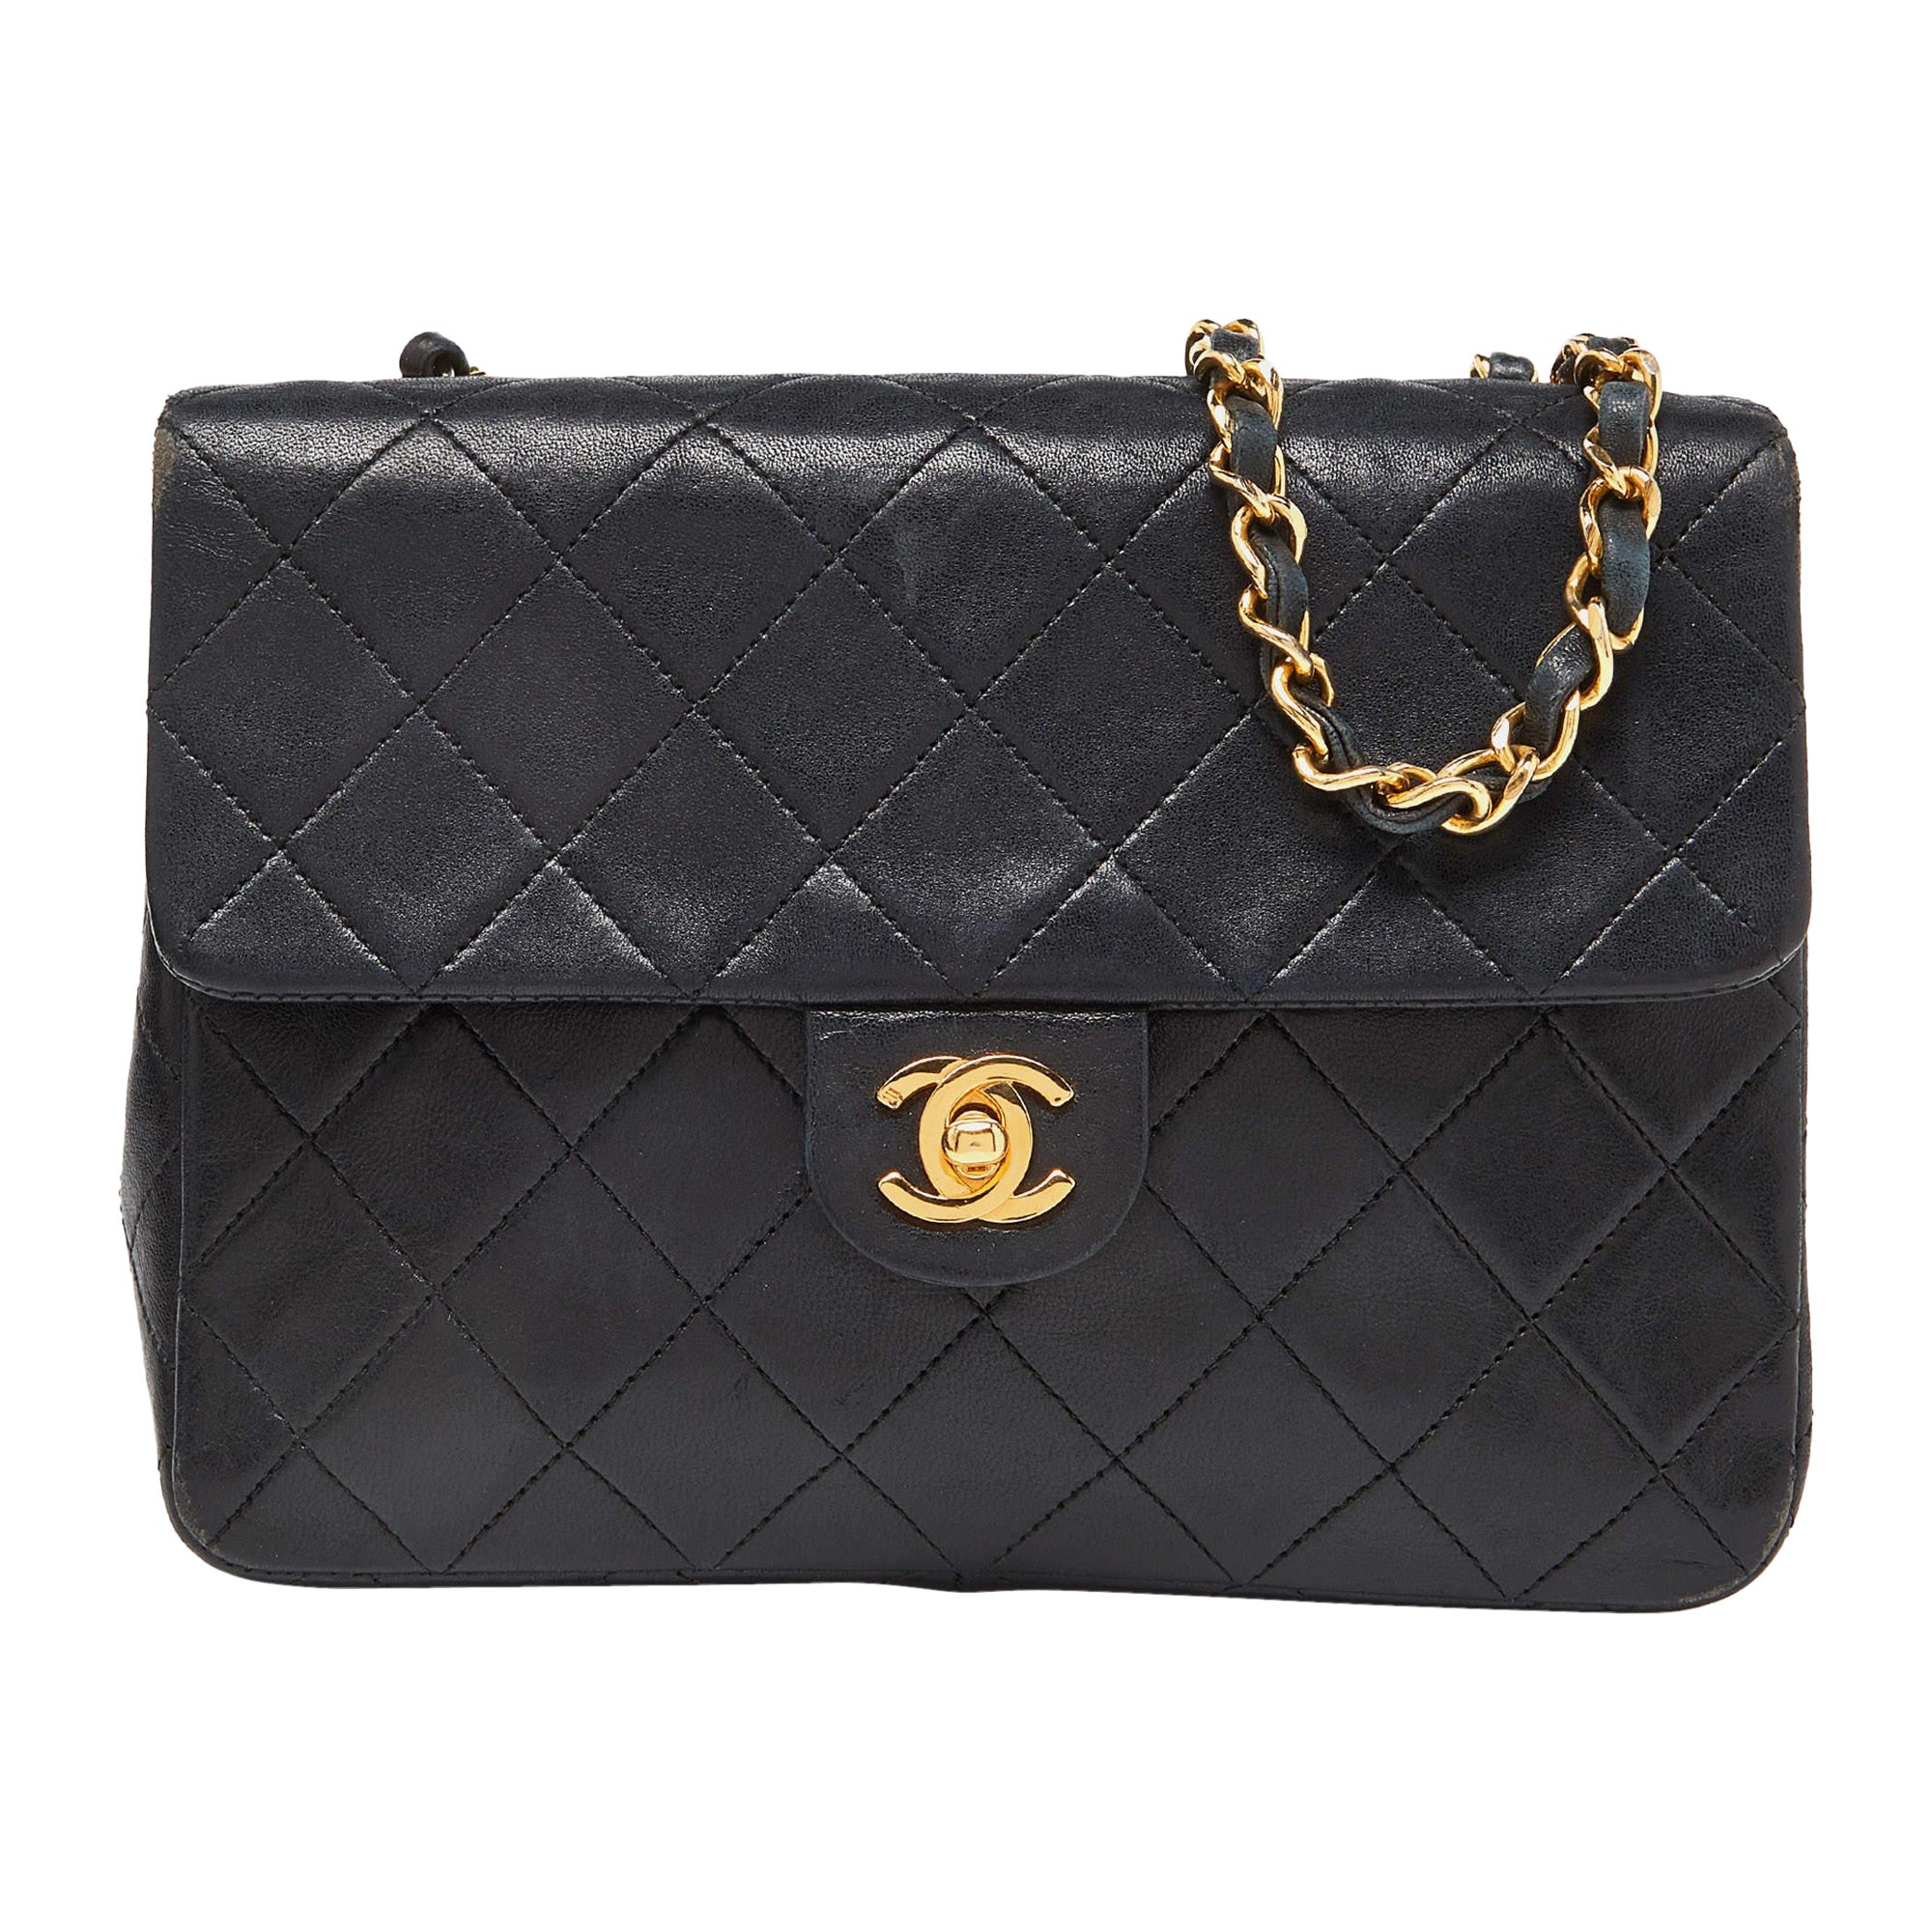 Chanel Black Quilted Leather Vintage Flap Shoulder Bag